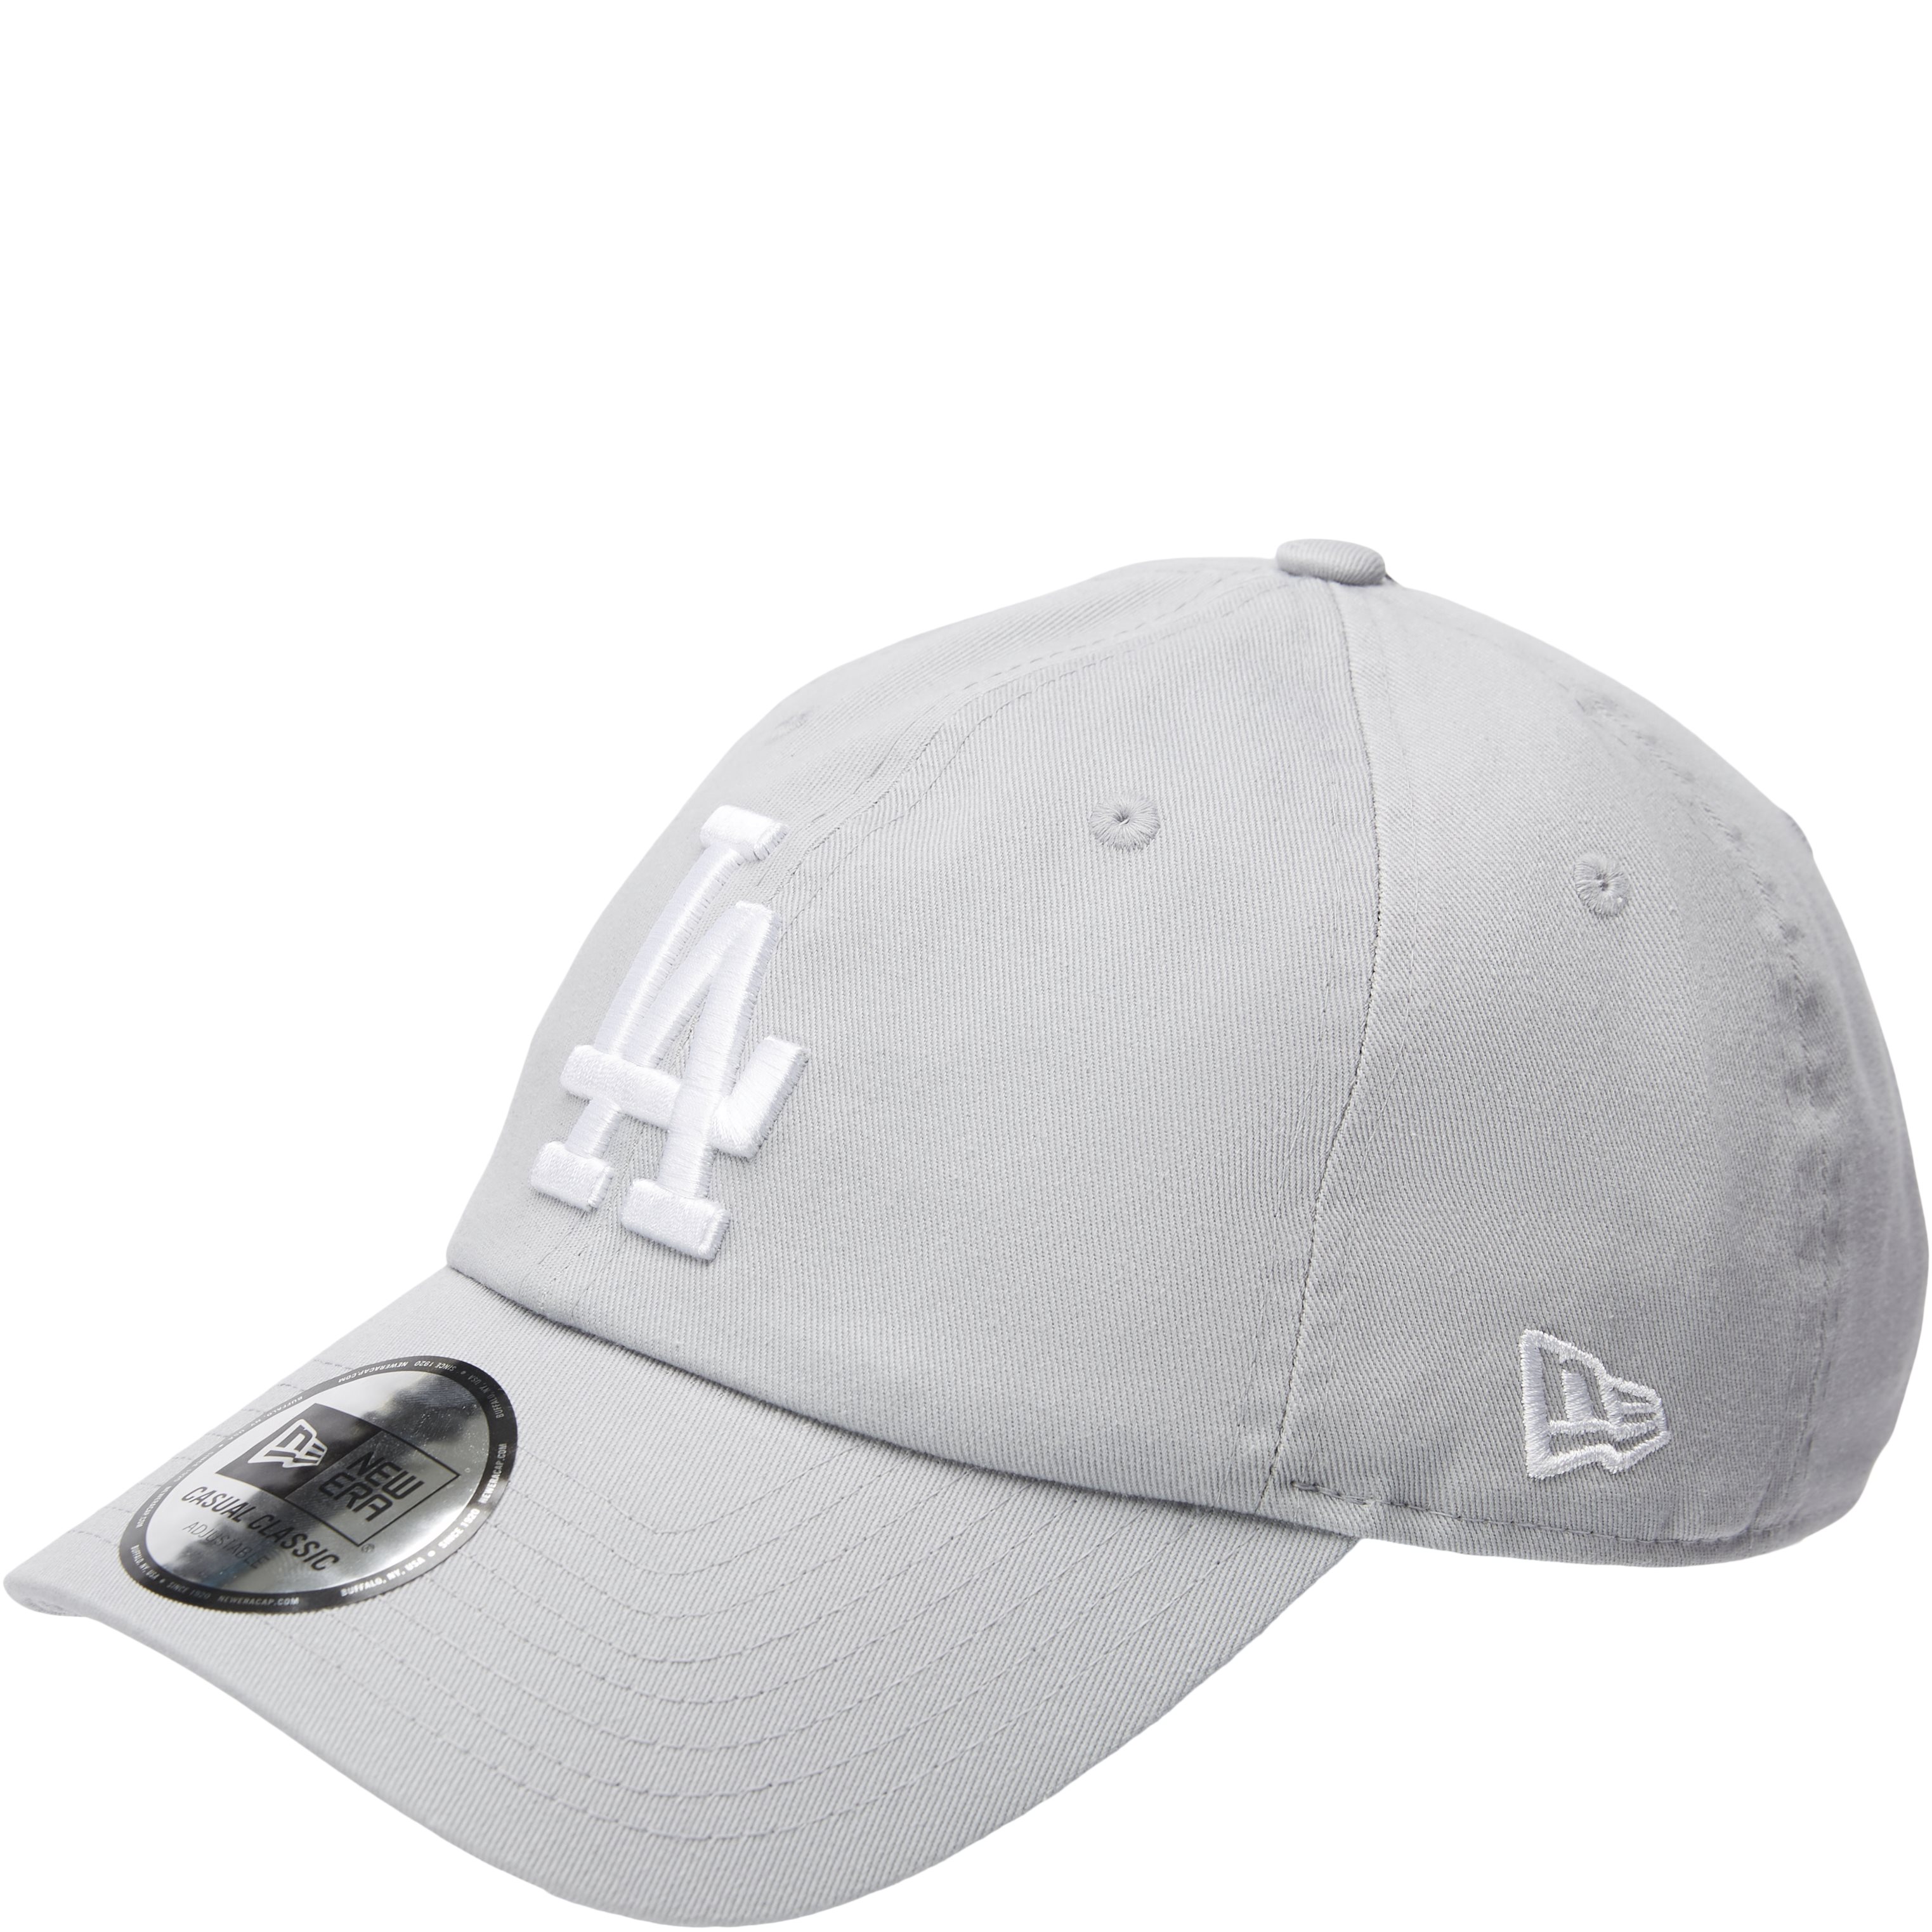 Dodgers Strapback Cap - Caps - Grey